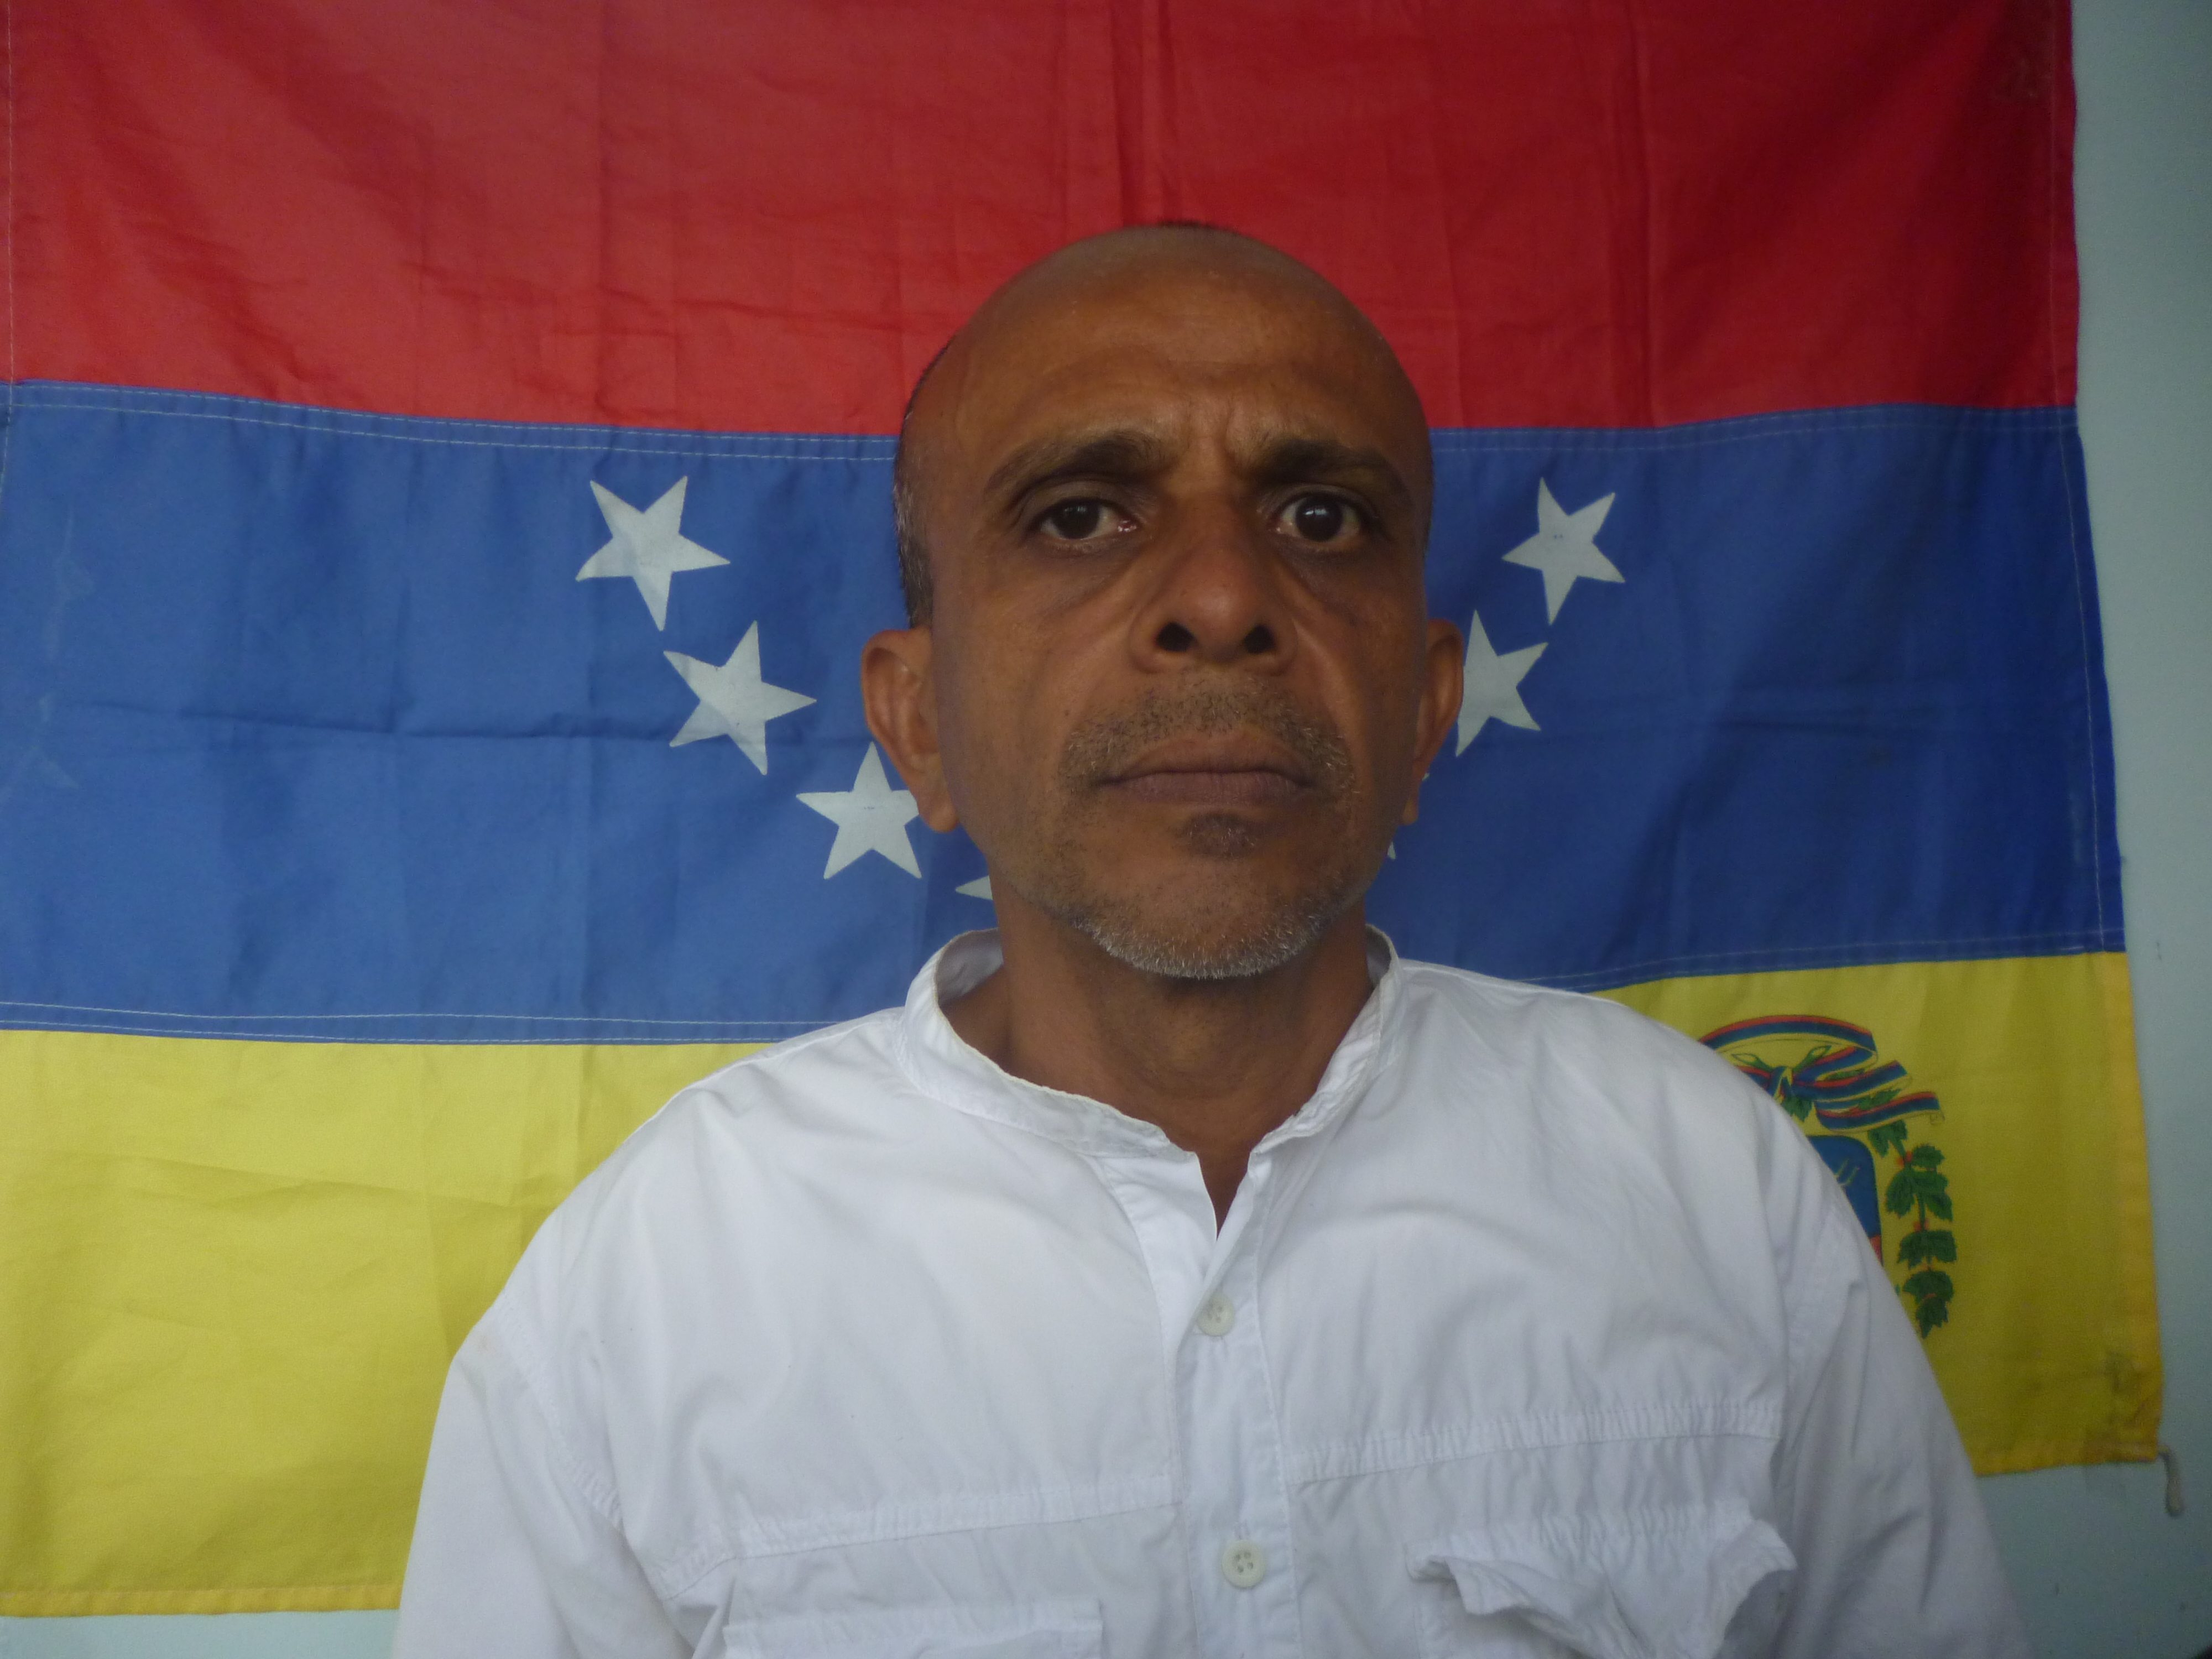 Vente Venezuela en Trujillo no doblará sus rodillas ante amenazas de la dictadura